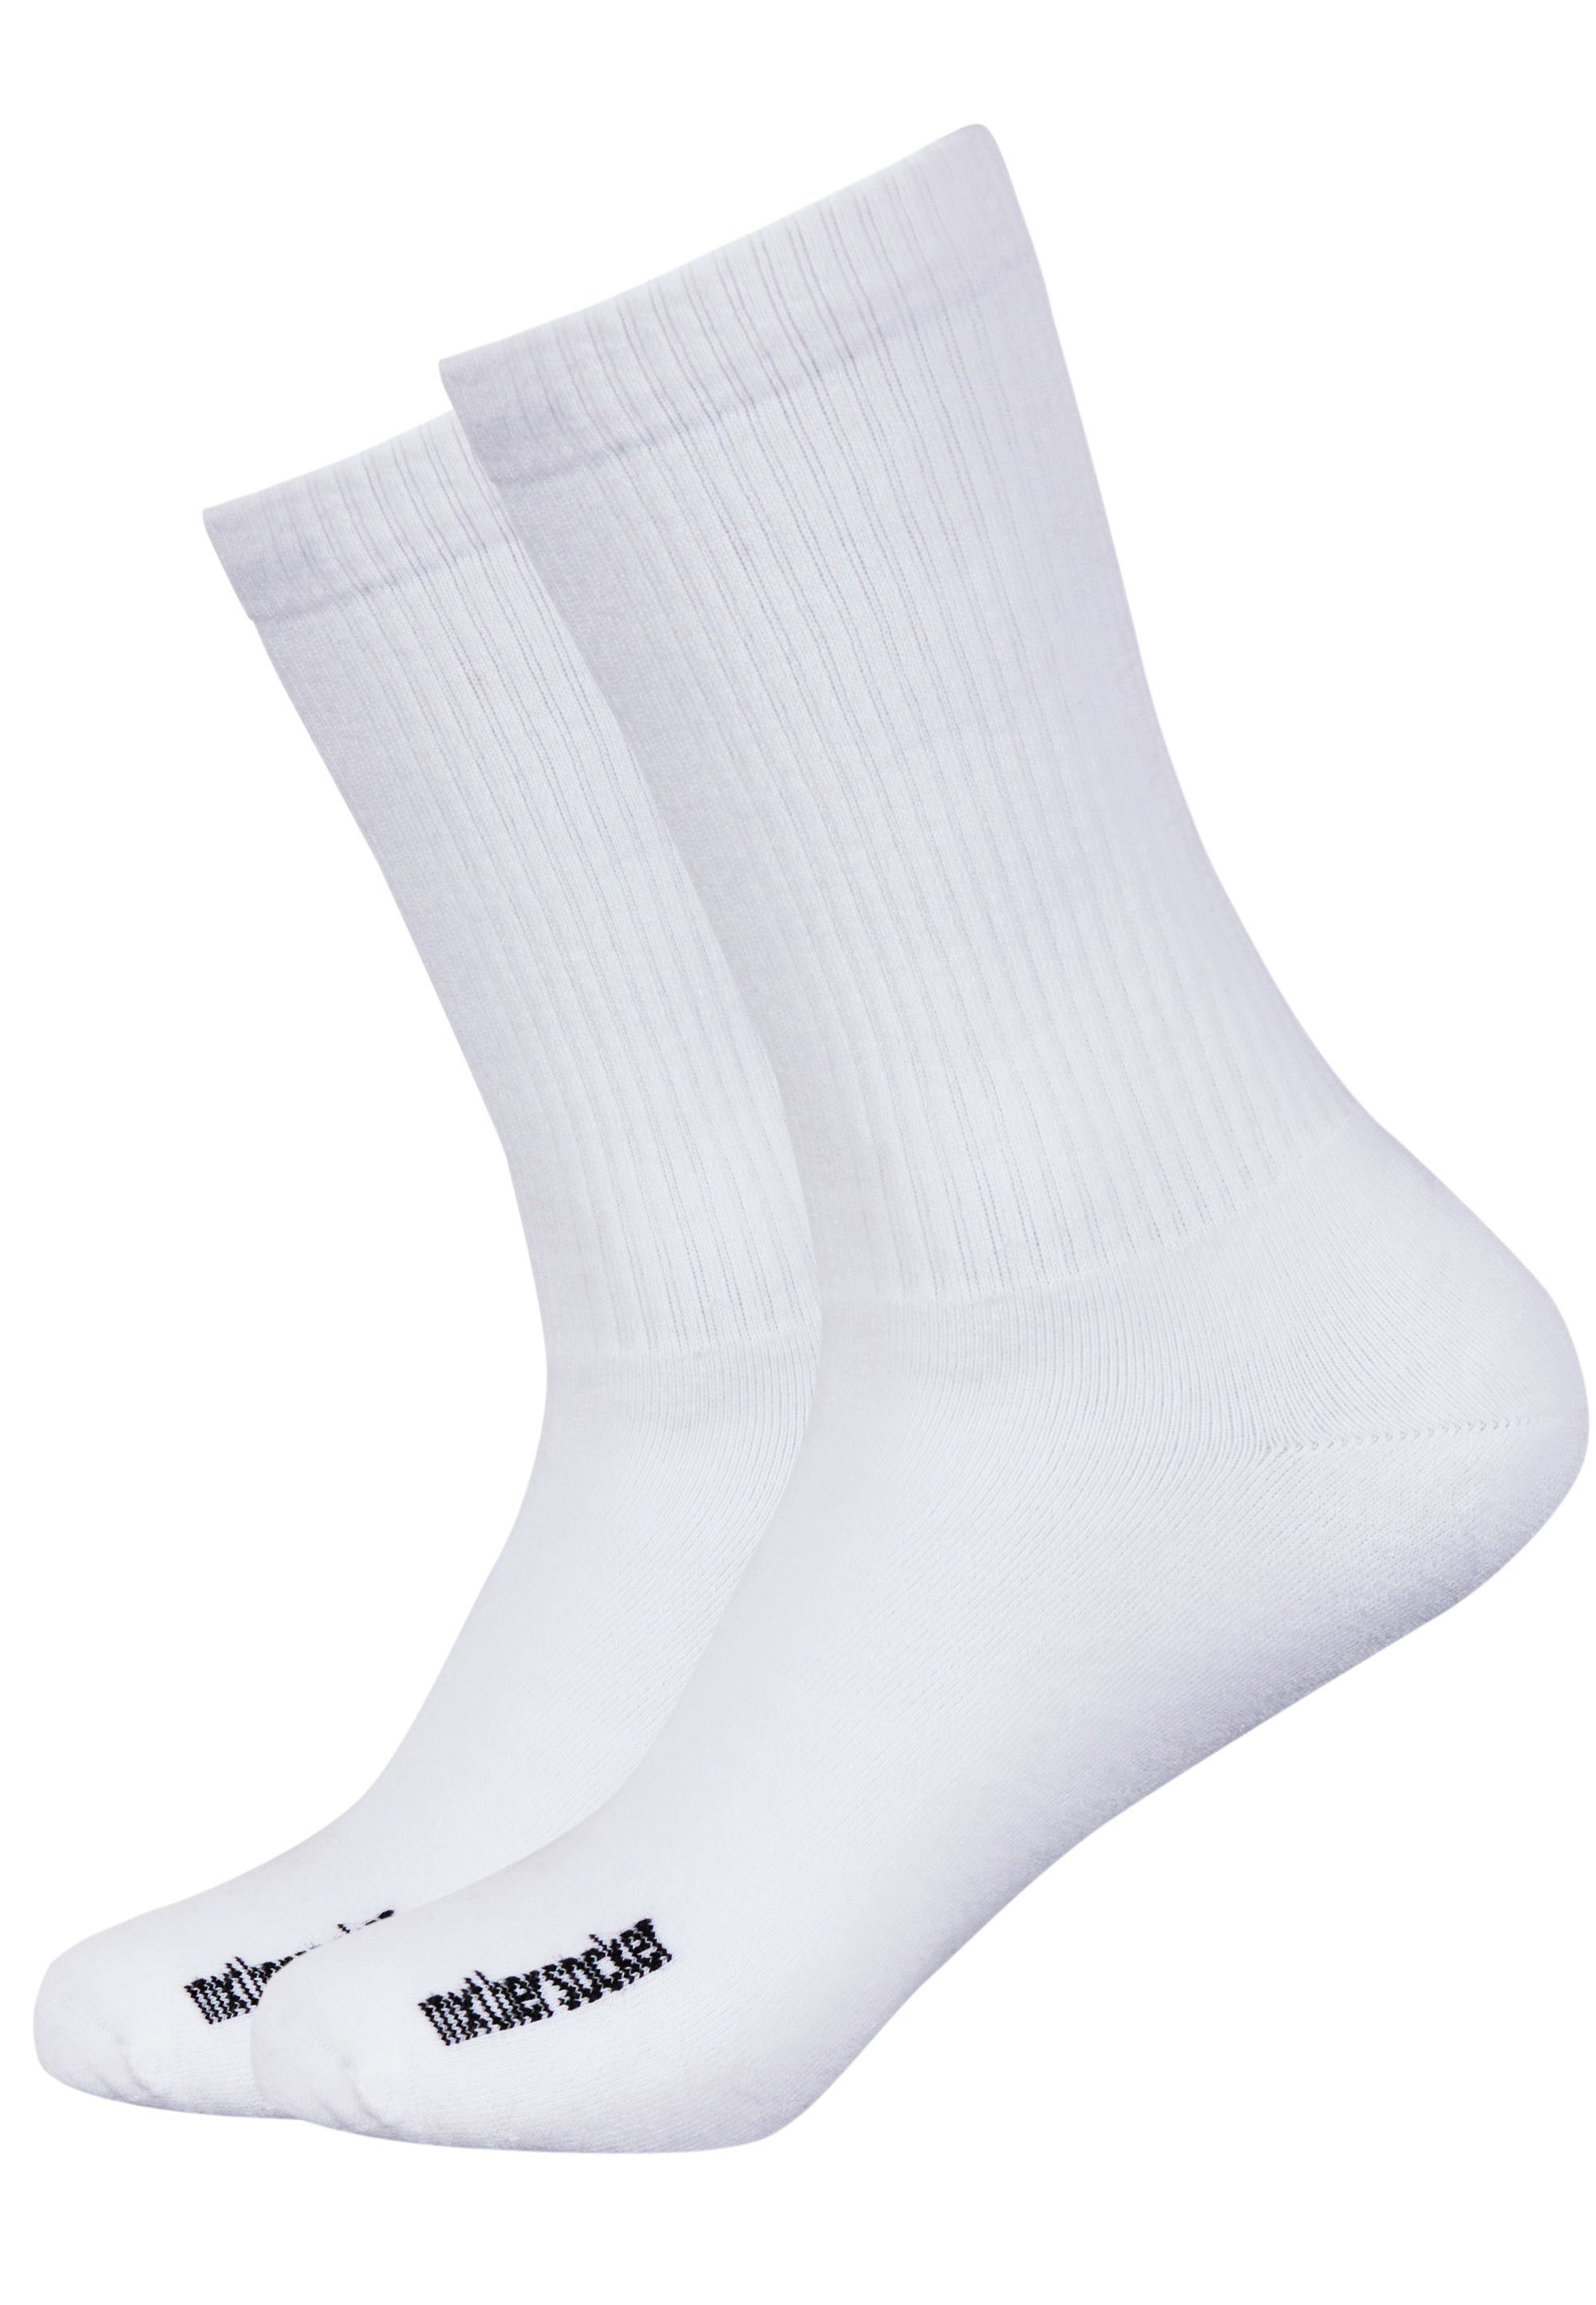 Mxthersocker mit Markenschriftzug THE NAKED Socken (3-Paar) MXTHERSOCKER dezentem - weiß ESSENTIAL